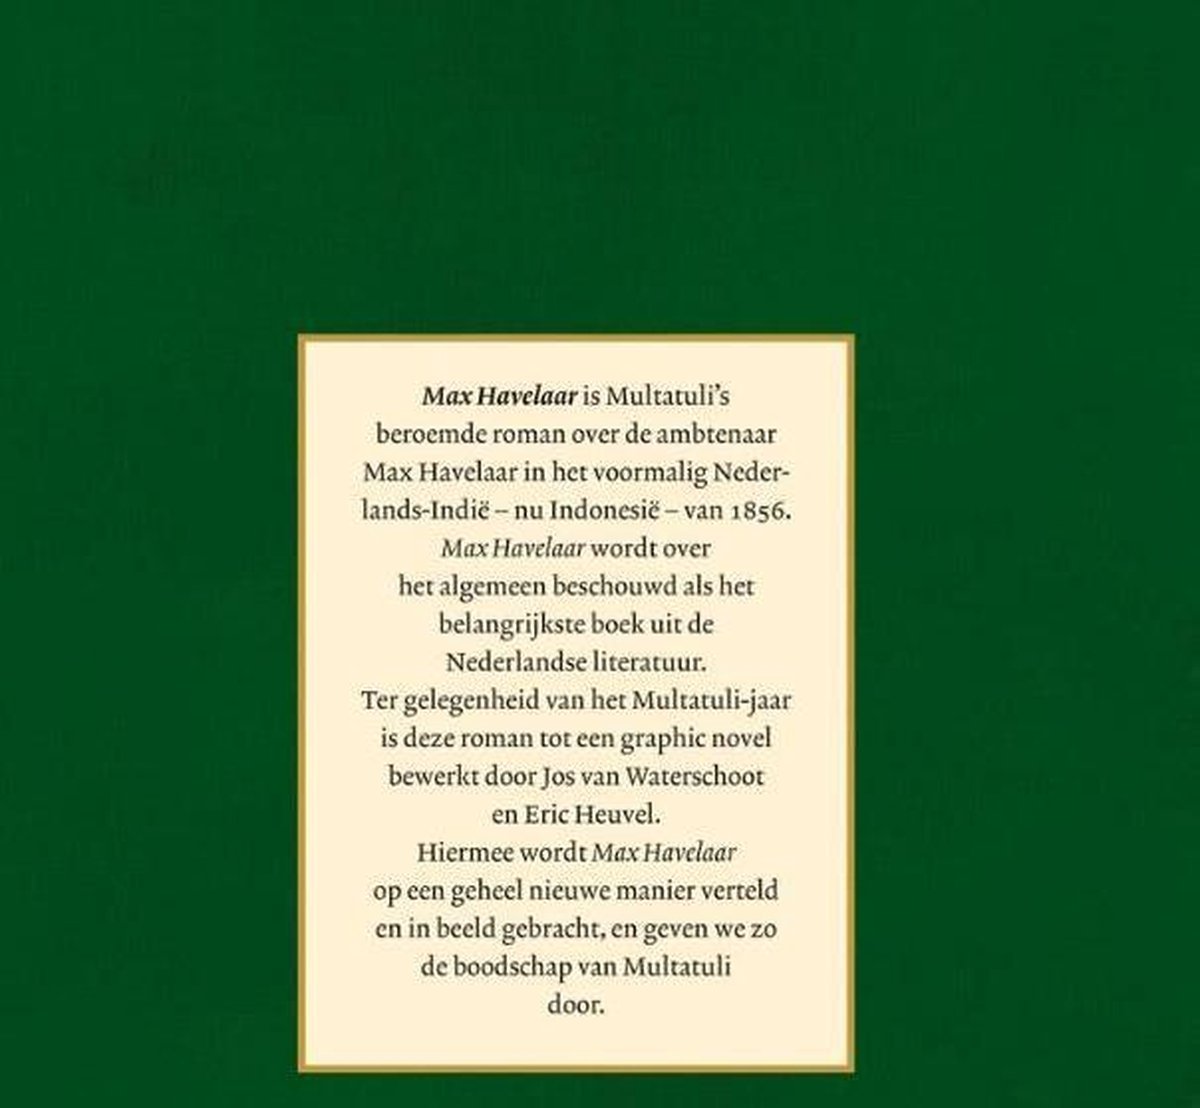 Multatuli’s Max Havelaar de graphic novel by Eric Heuvel